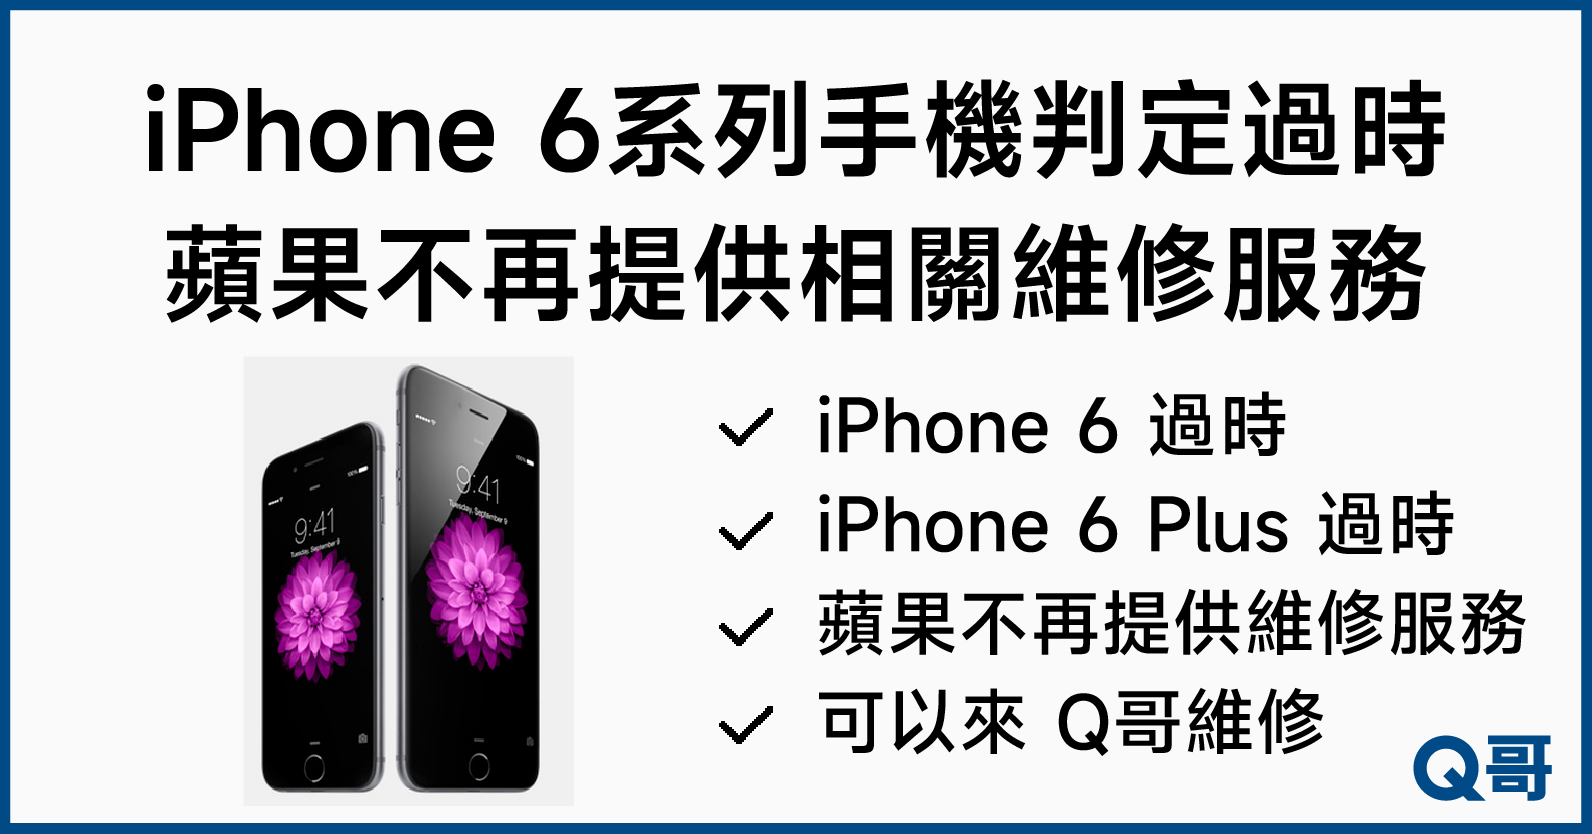 蘋果不再提供 iPhone 6維修服務